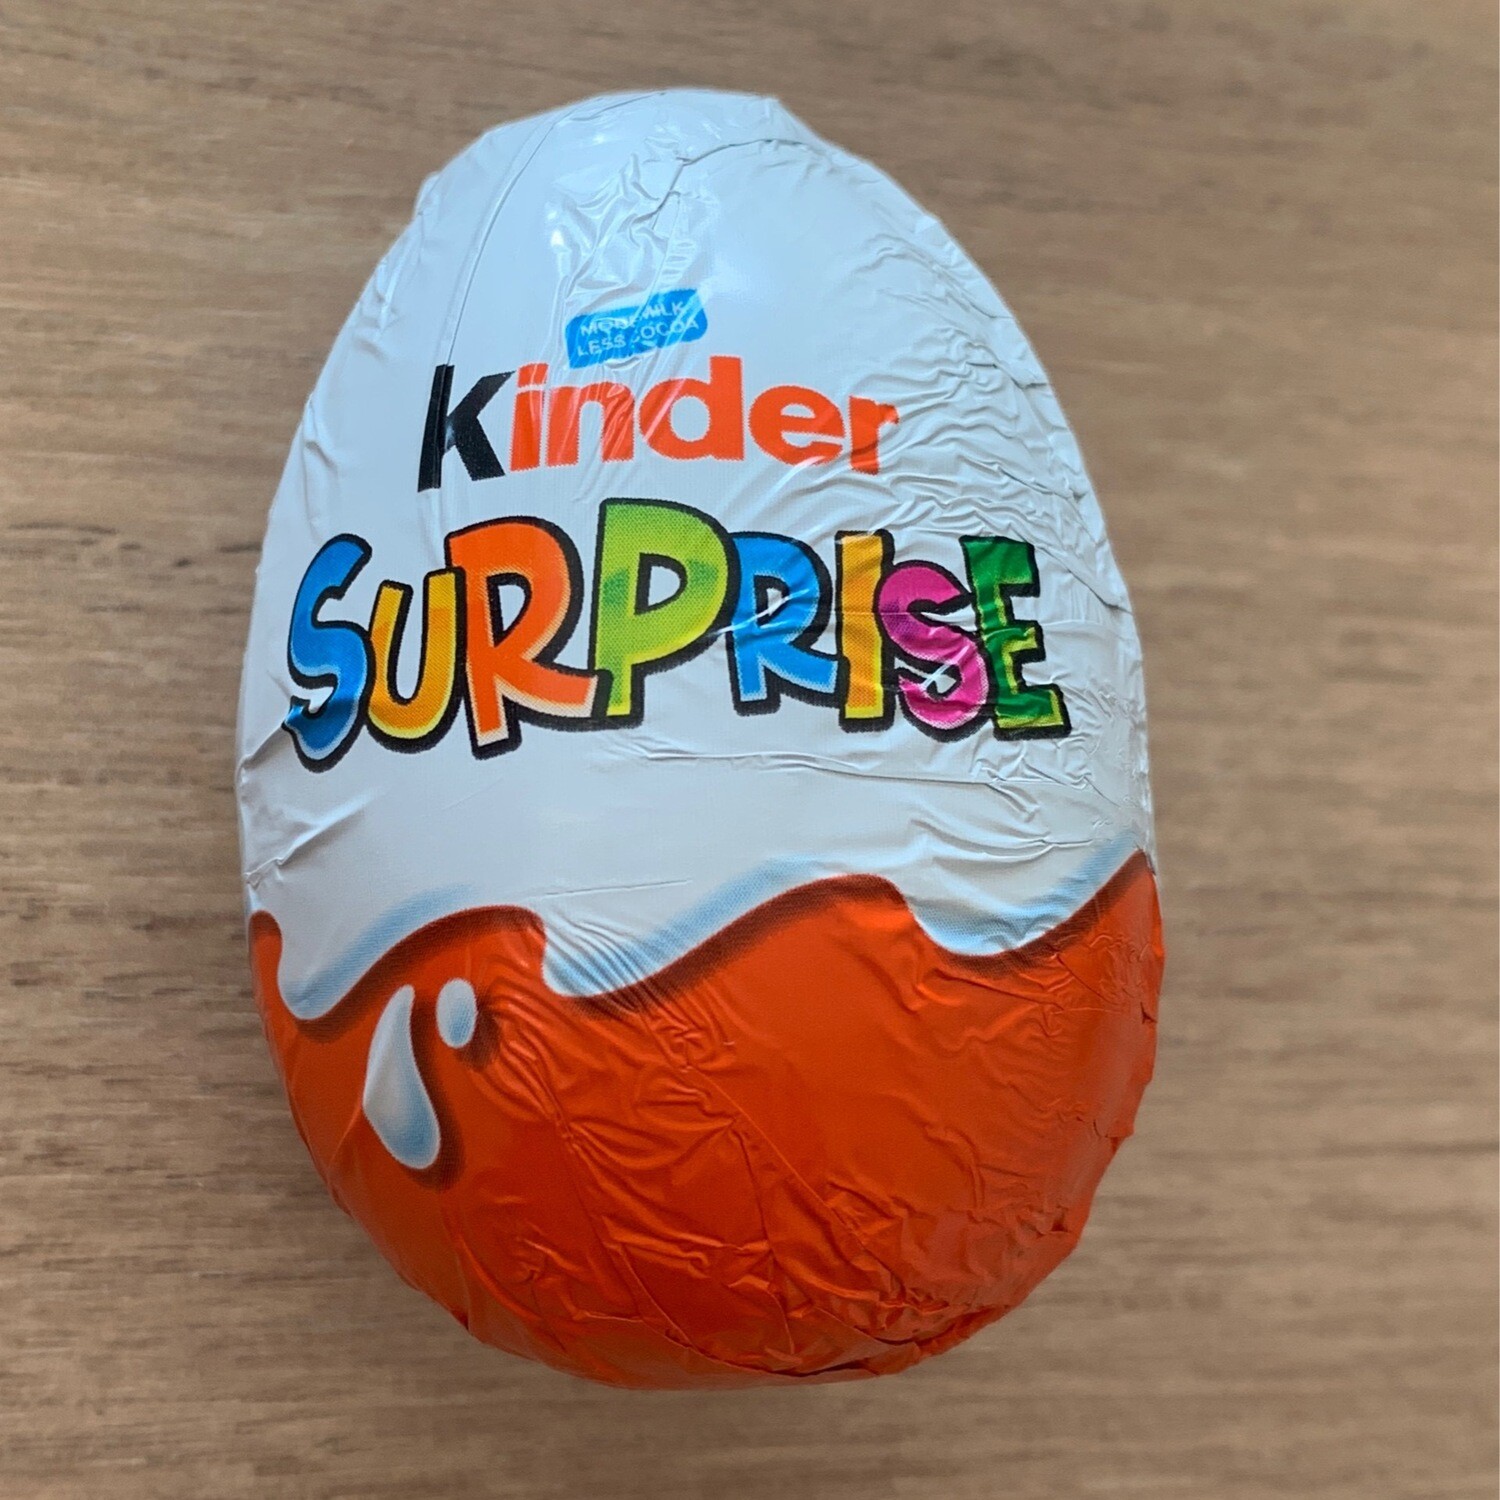 Kinder Surprise Egg (20g)